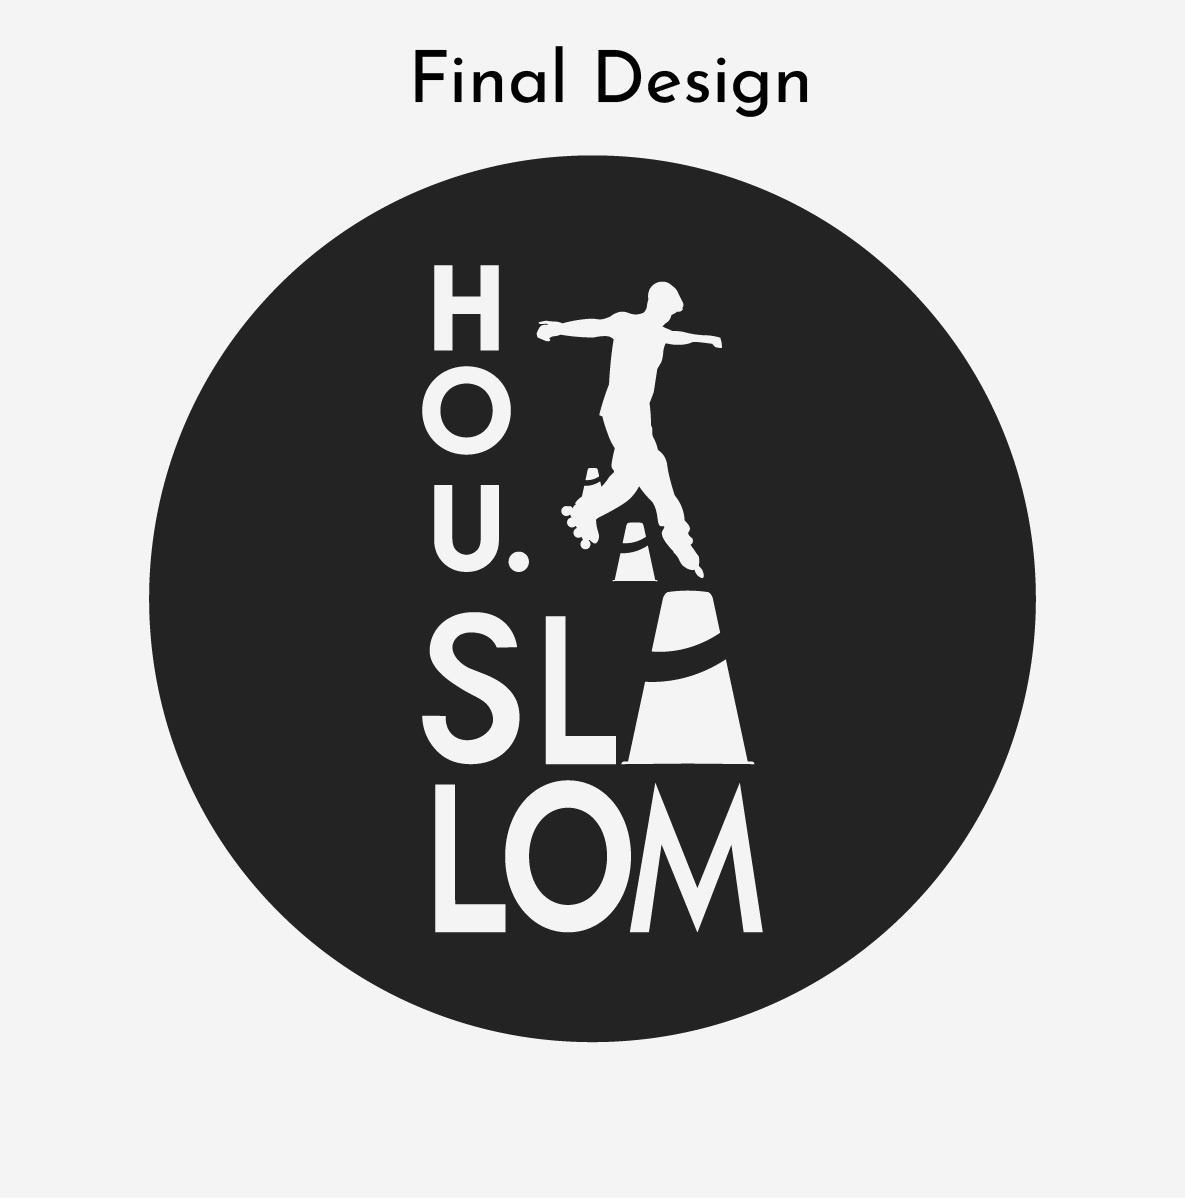 Final logo design for Hou.Slalom